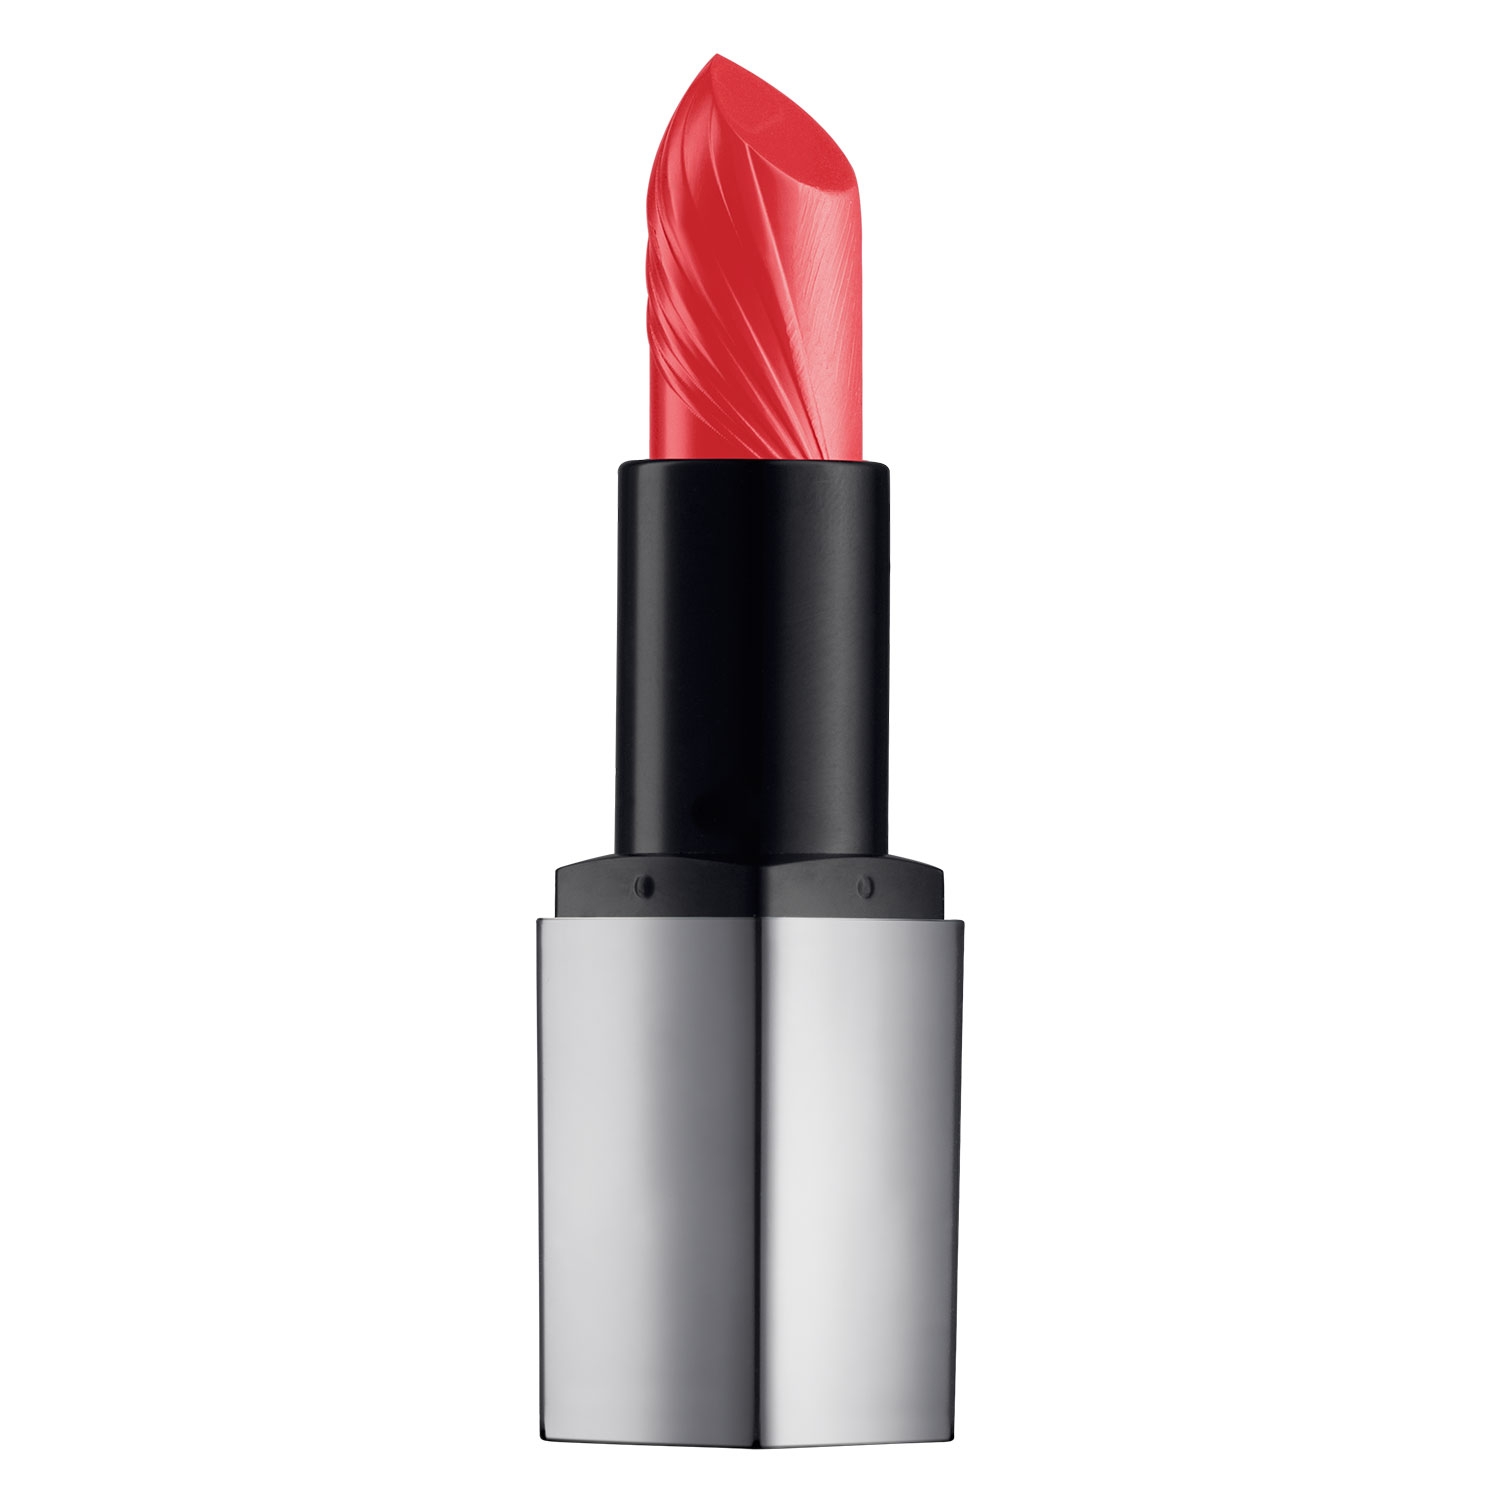 Produktbild von Reviderm Lips - Mineral Boost Lipstick Cherry Sunset Whisper 3W